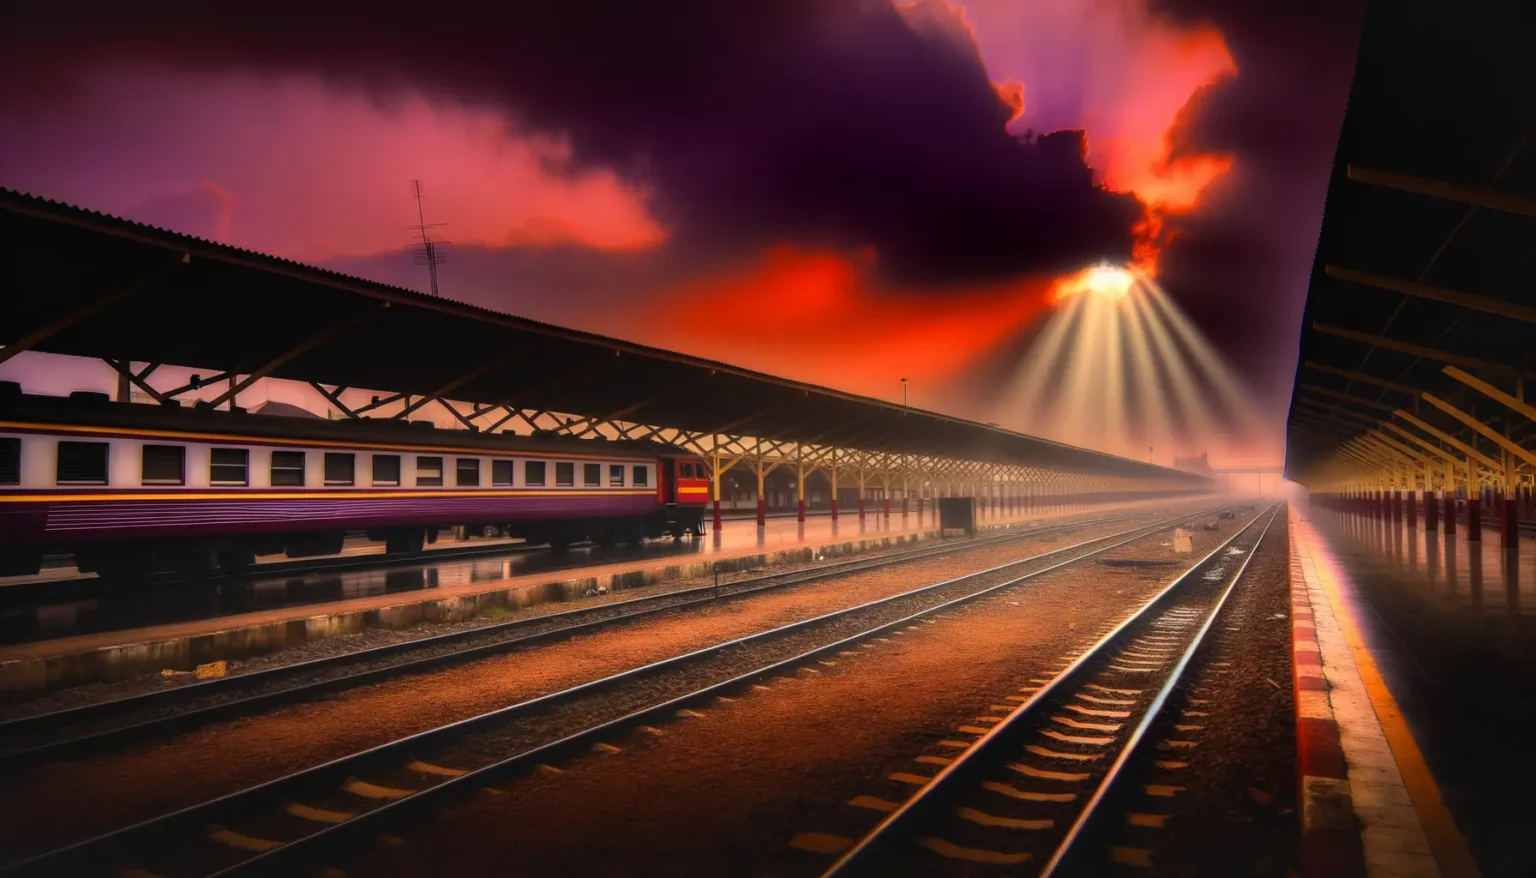 Ein dramatisch beleuchteter Bahnhof bei Sonnenuntergang mit einem Zug auf den Gleisen, der Himmel ist in warme Rot- und Orangetöne getaucht, die Sonnenstrahlen brechen durch dunkle Wolken. Ein langer Bahnsteig führt in die Ferne, flankiert von einem überdachten Wartebereich.